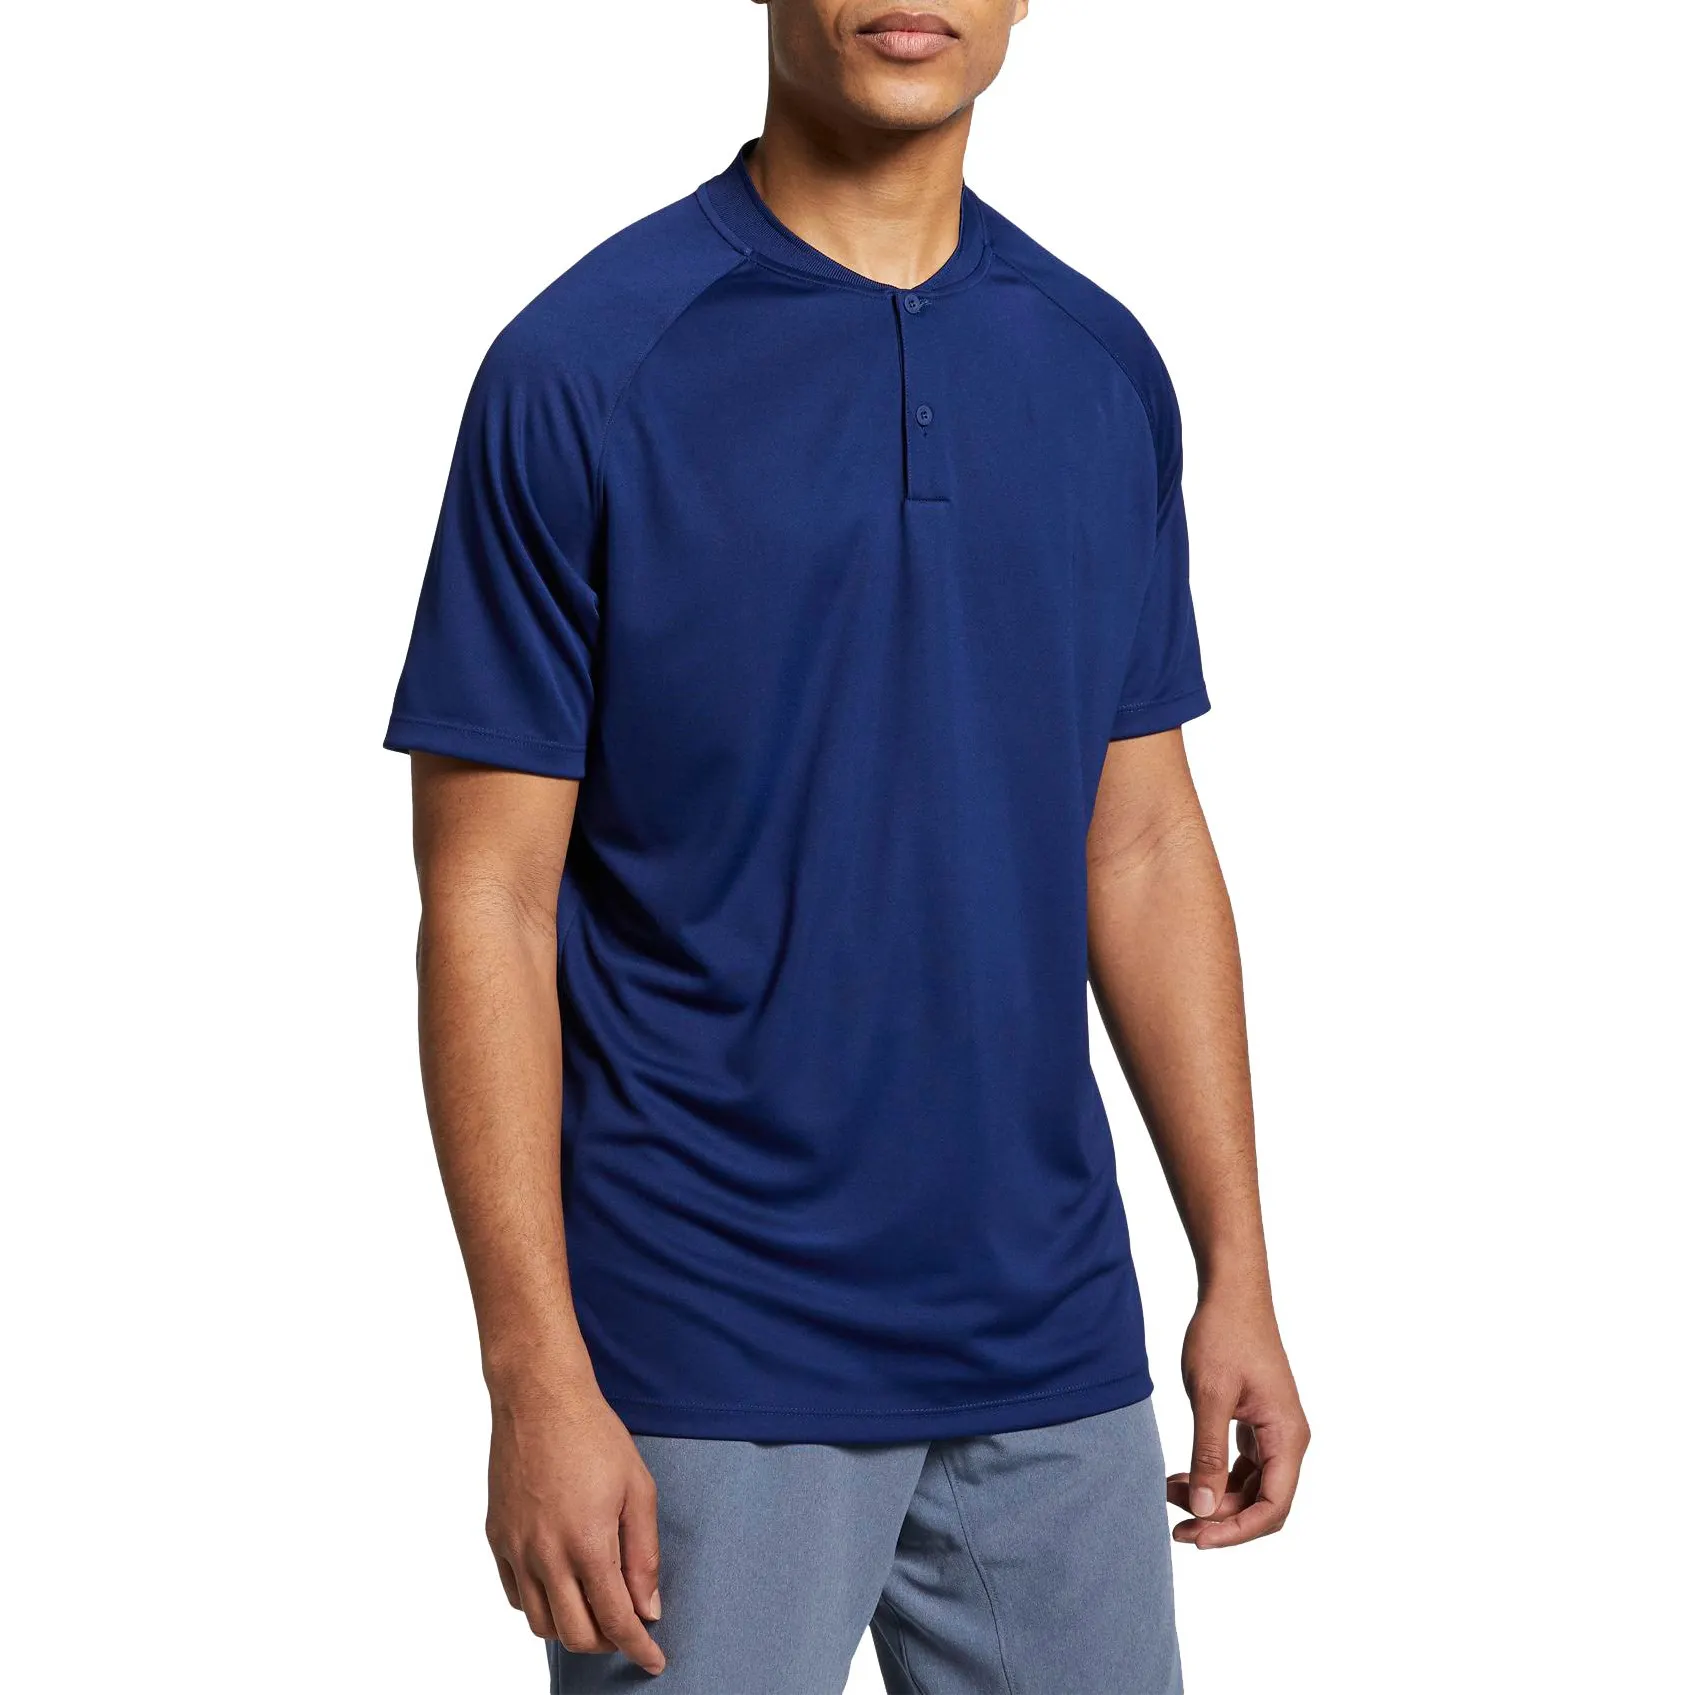 Mens di Modo di Qualità Wicking Traspirante Navy Blu Del Manicotto di Raglan Nessun Collare No Logo Personalizzato Golf Tee Shirts